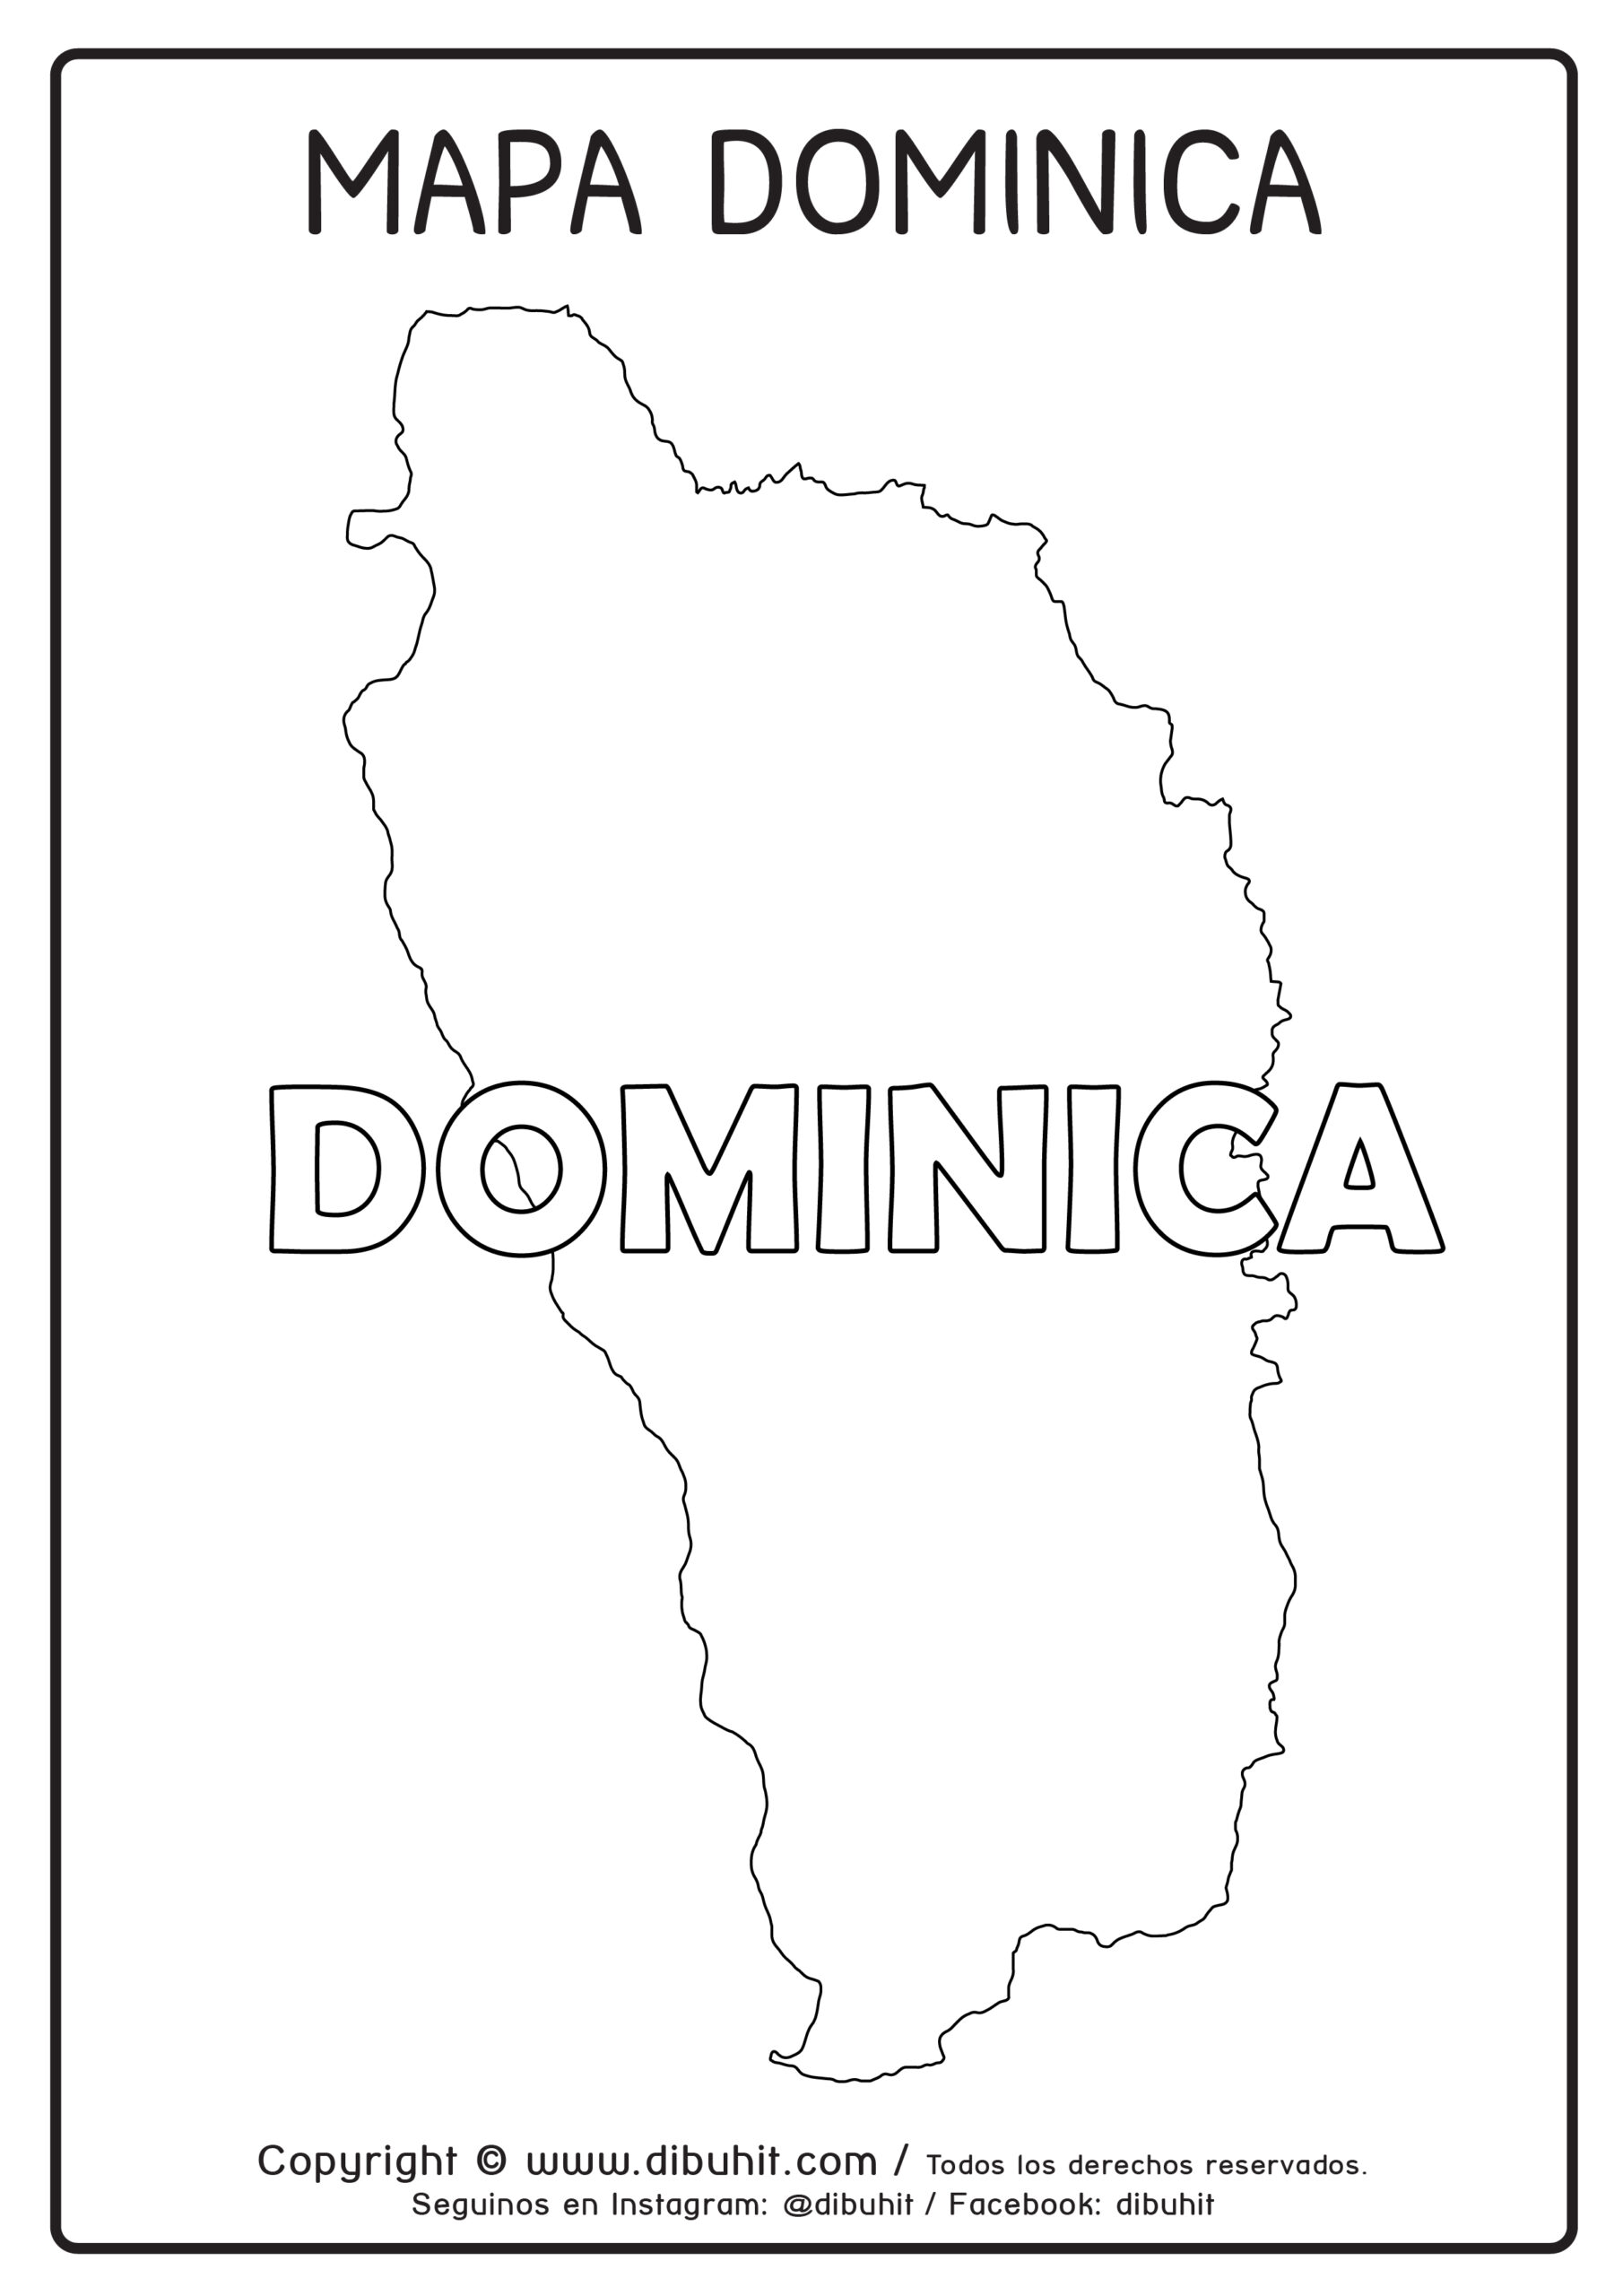 Dibujo de mapa y nombre de dominica para colorear